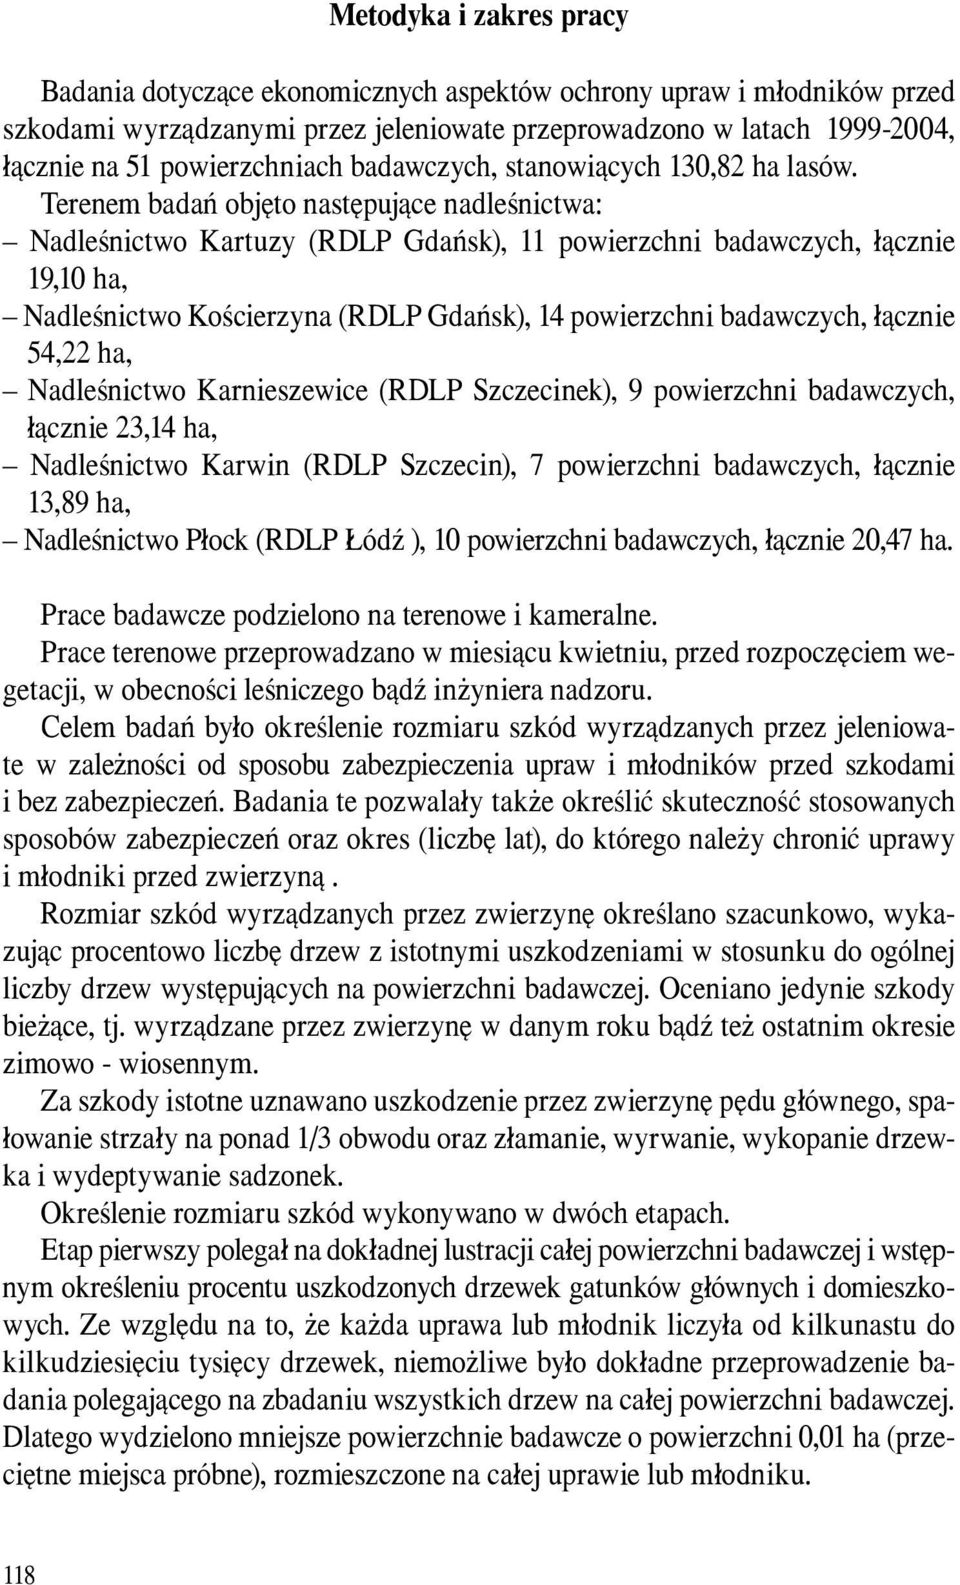 Terenem badań objęto następujące nadleśnictwa: Nadleśnictwo Kartuzy (RDLP Gdańsk), 11 powierzchni badawczych, łącznie 19,10 ha, Nadleśnictwo Kościerzyna (RDLP Gdańsk), 14 powierzchni badawczych,